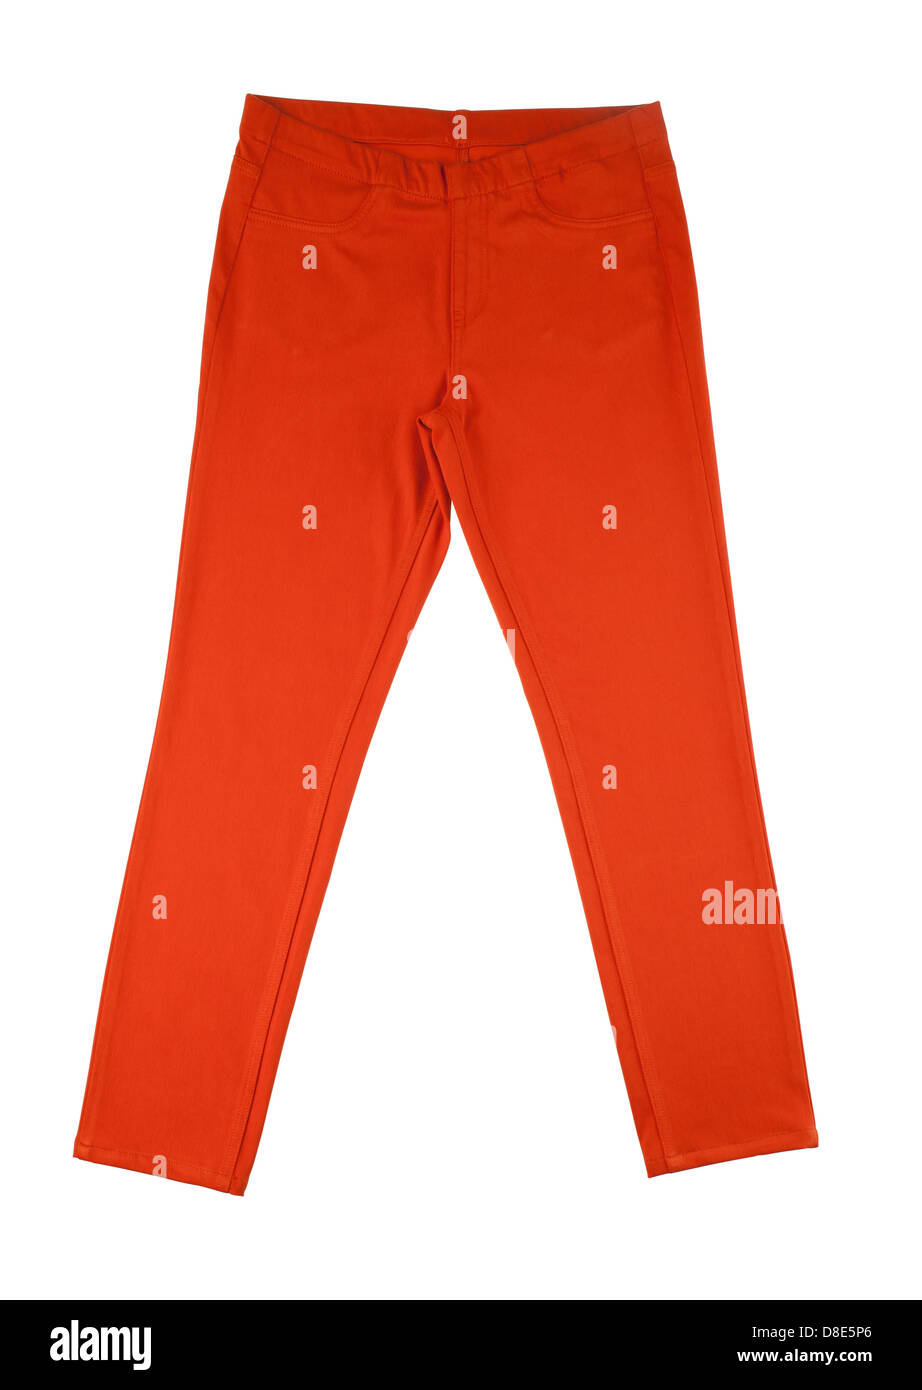 Pantalones naranja aislado sobre fondo blanco. Foto de stock